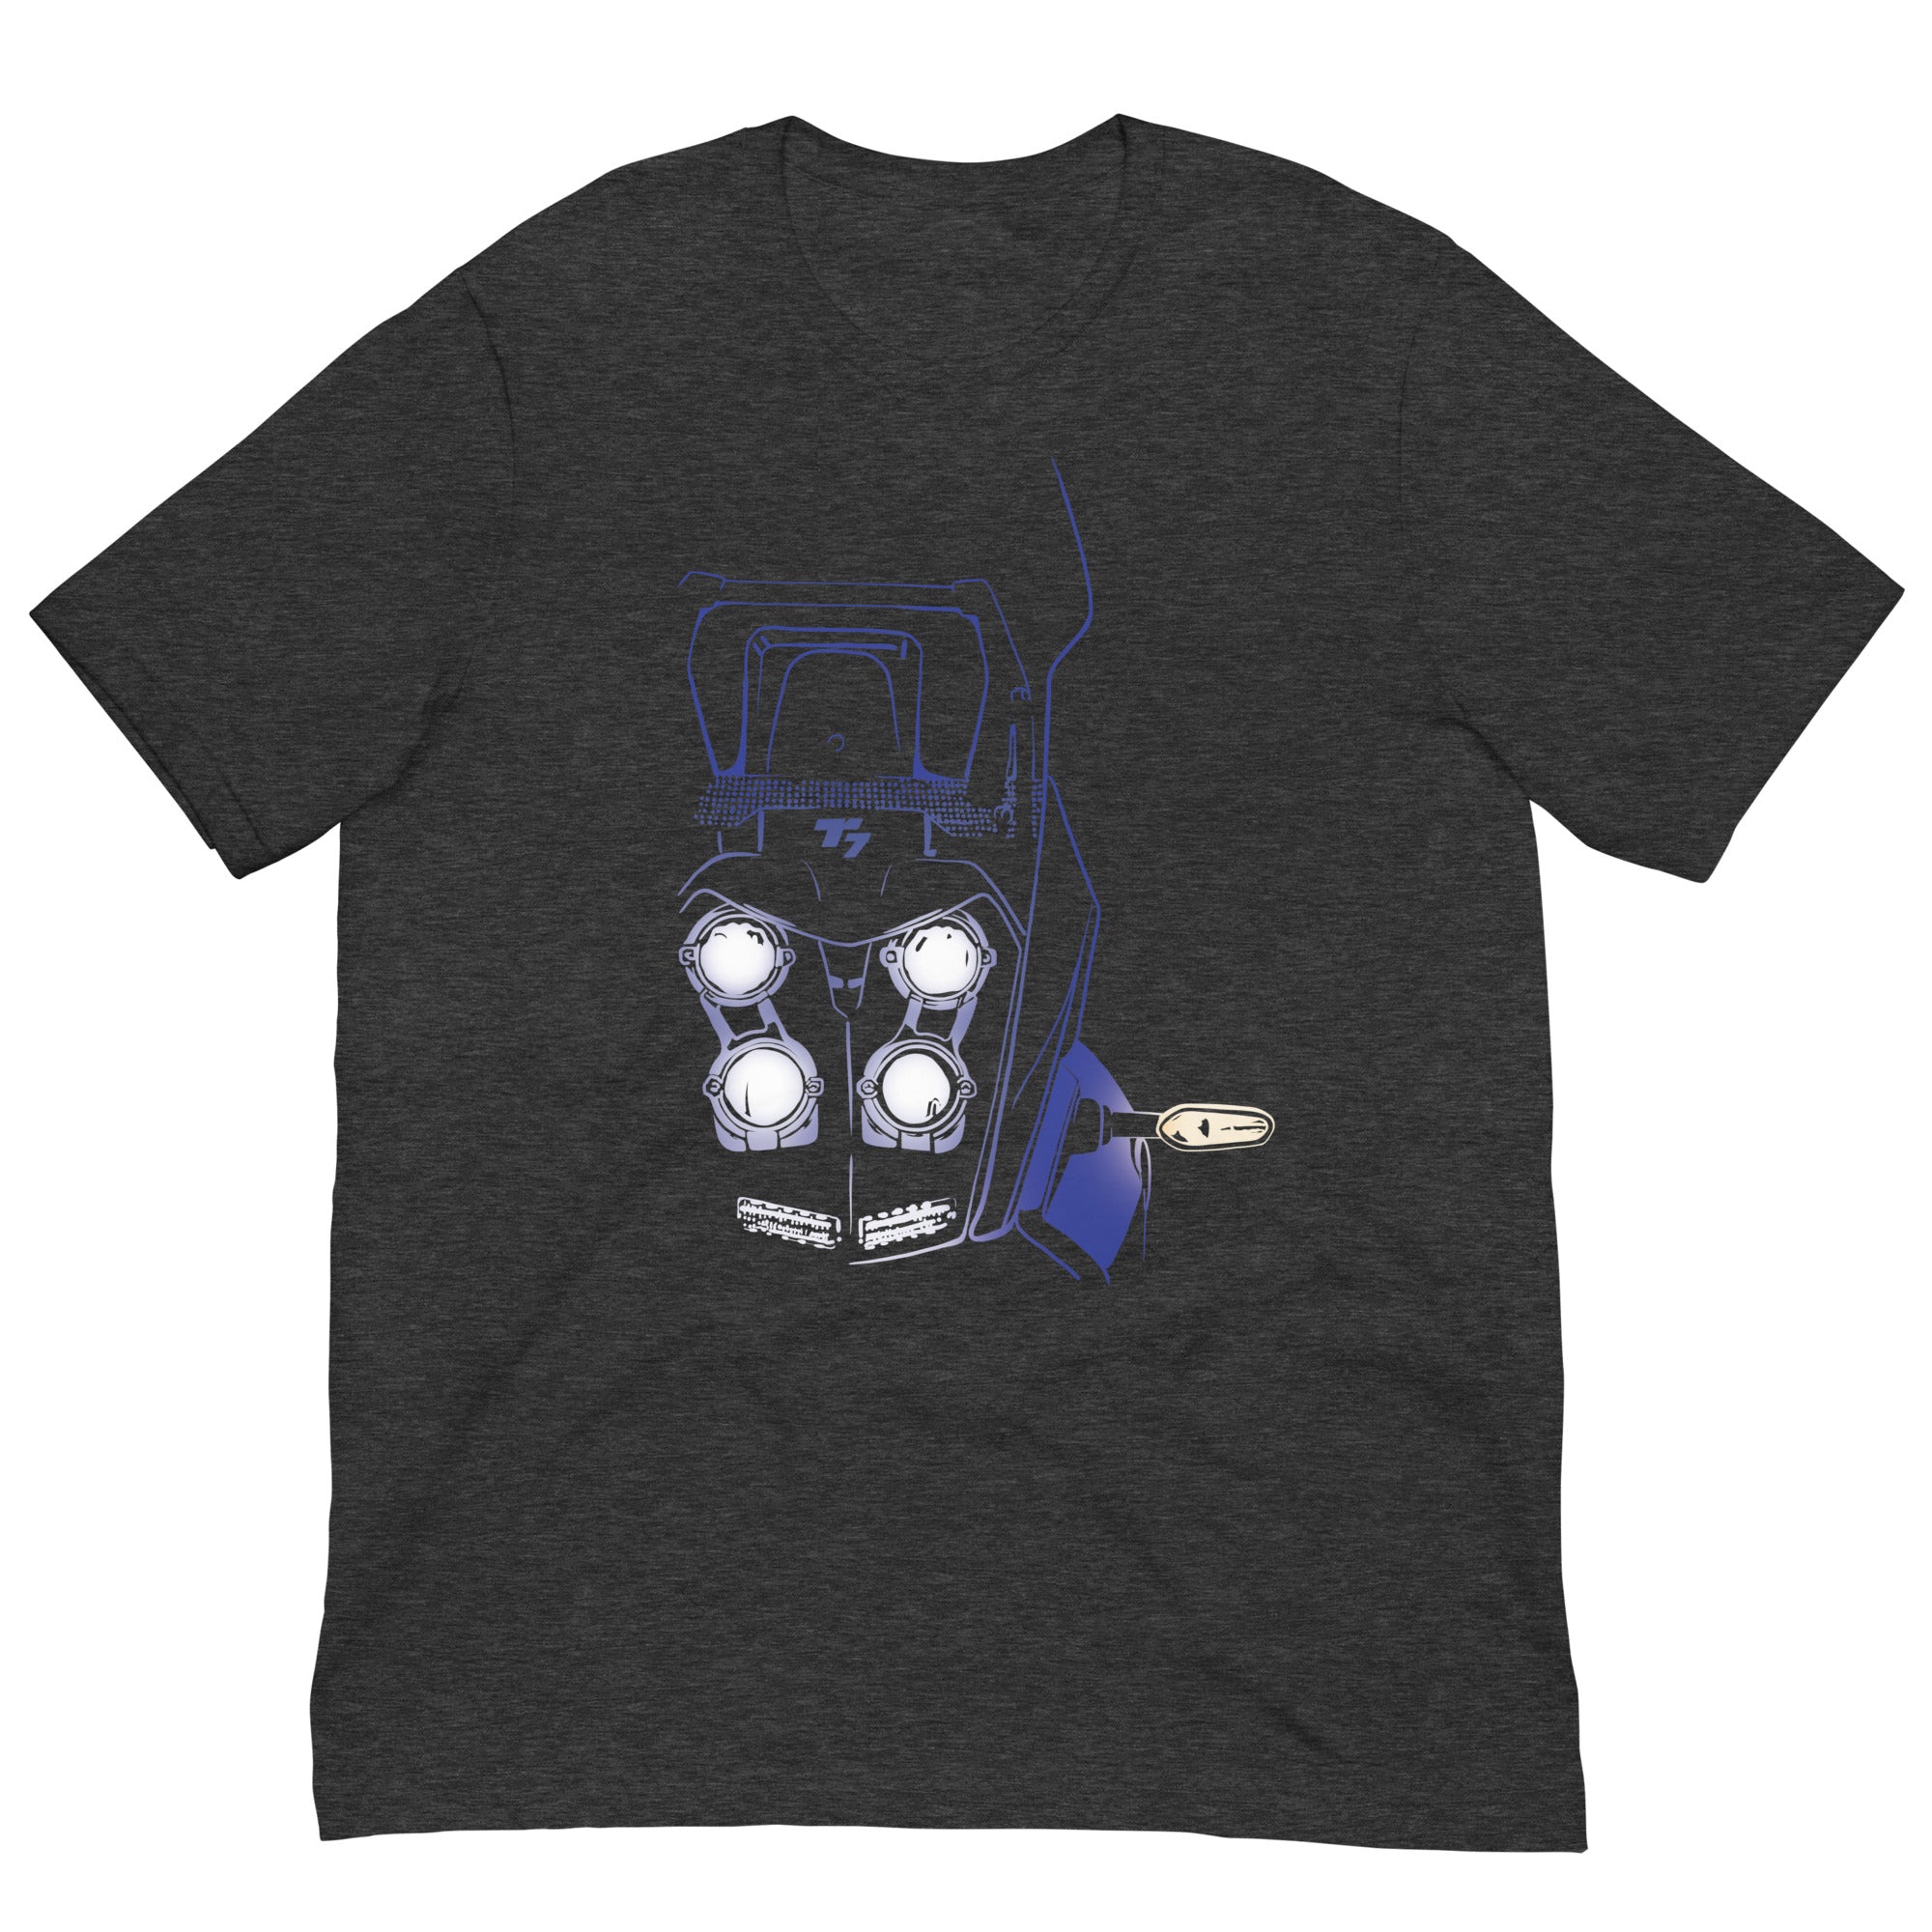 T-7 Headlights t-shirt - Blue